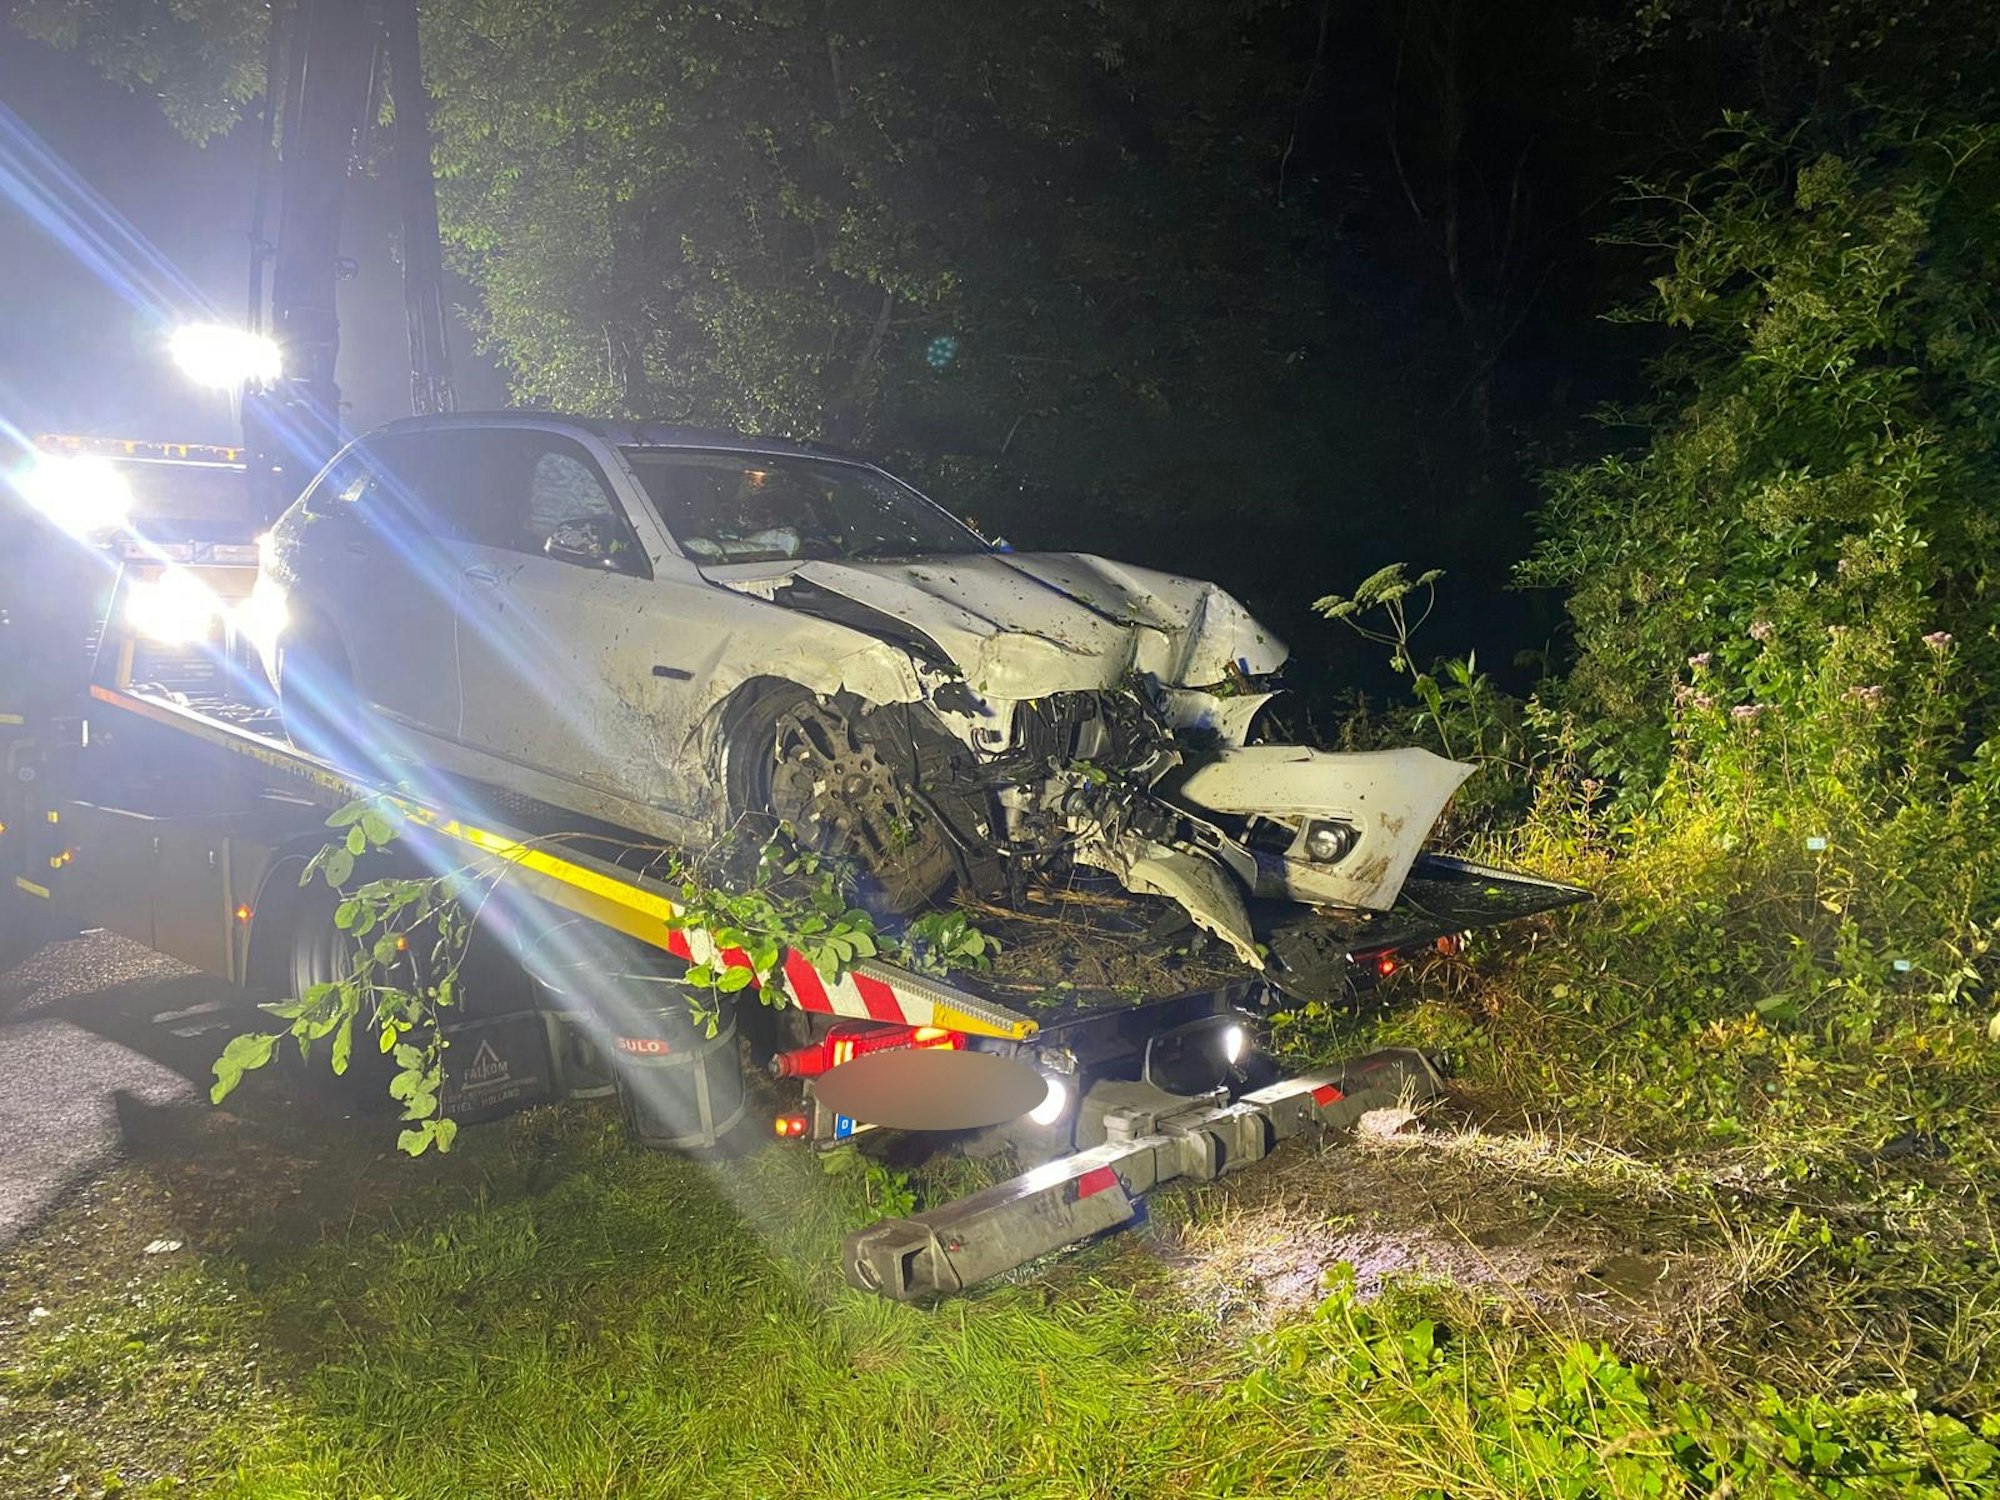 Am Dienstagabend (3. August) wurde die Feuerwehr Sprockhövel zu einer Unfallstelle gerufen, weil ein PKW von der Fahrbahn abkam und beschädigt wurde.